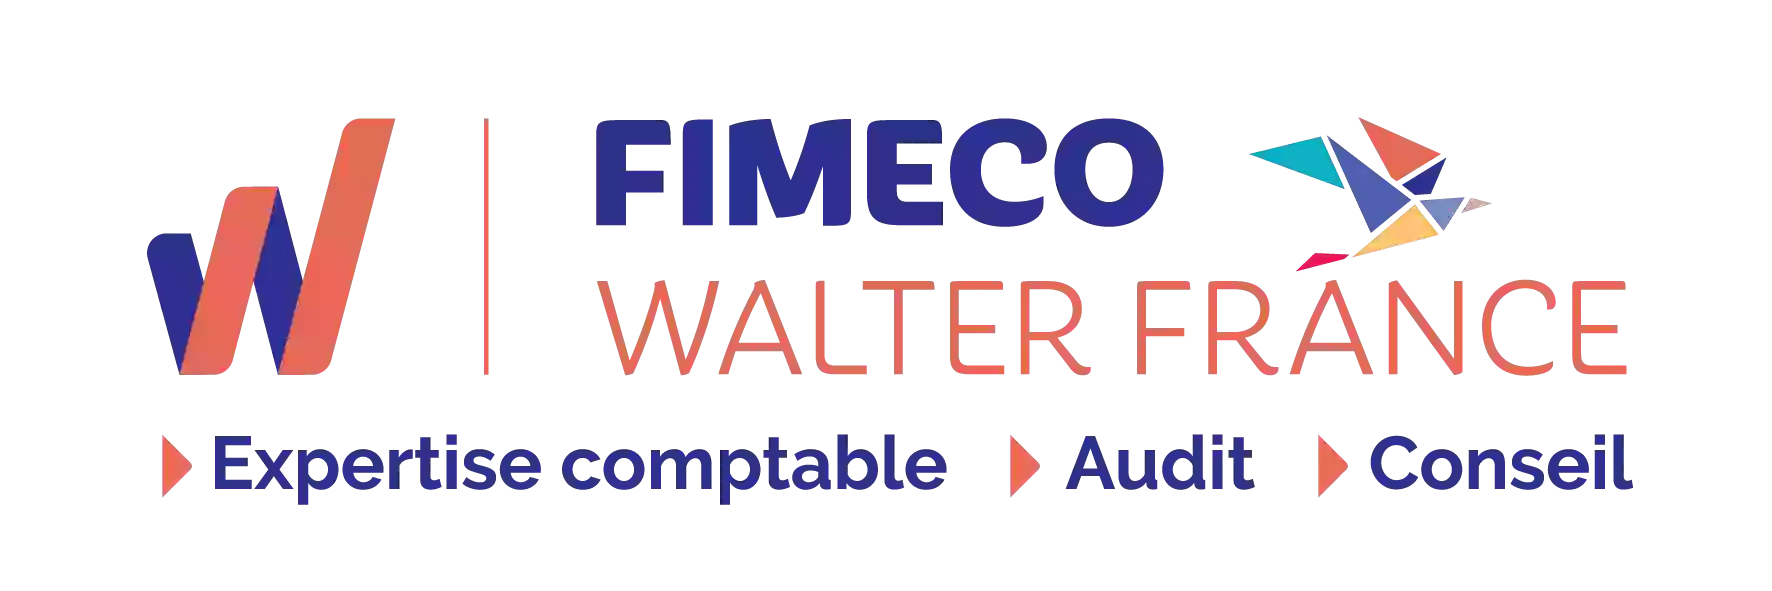 FIMECO Walter France - COMPTABLE - EXPERT COMPTABLE - Artisans Commerçants - Professions Libérales - CHALLANS - SOULLANS